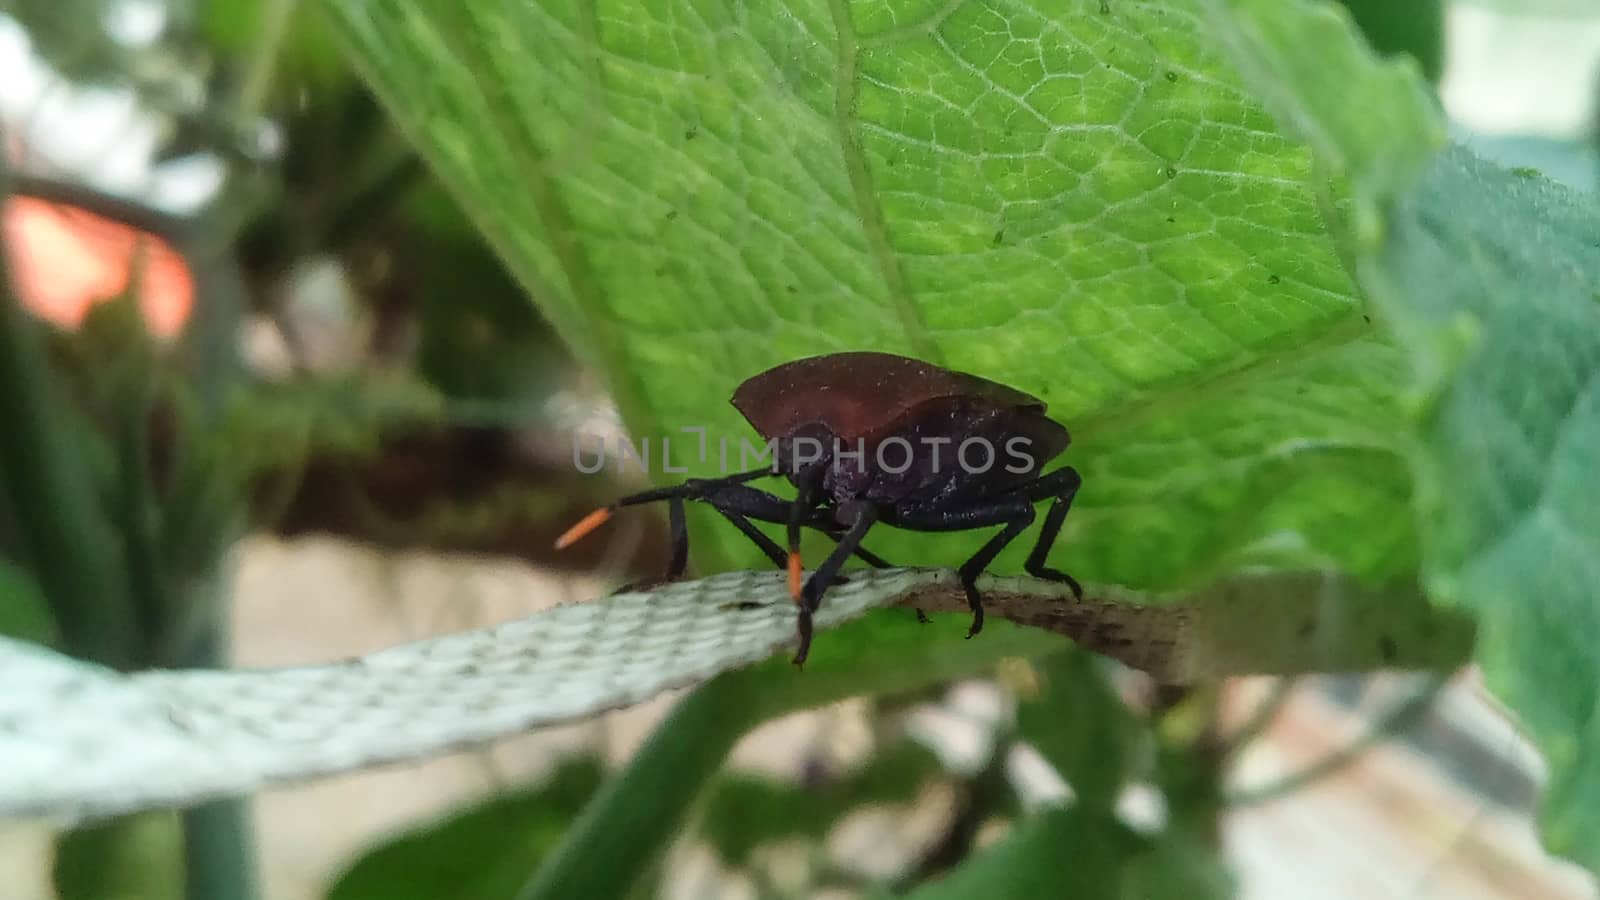 brouwn bug on a green leaf by jahidul2358